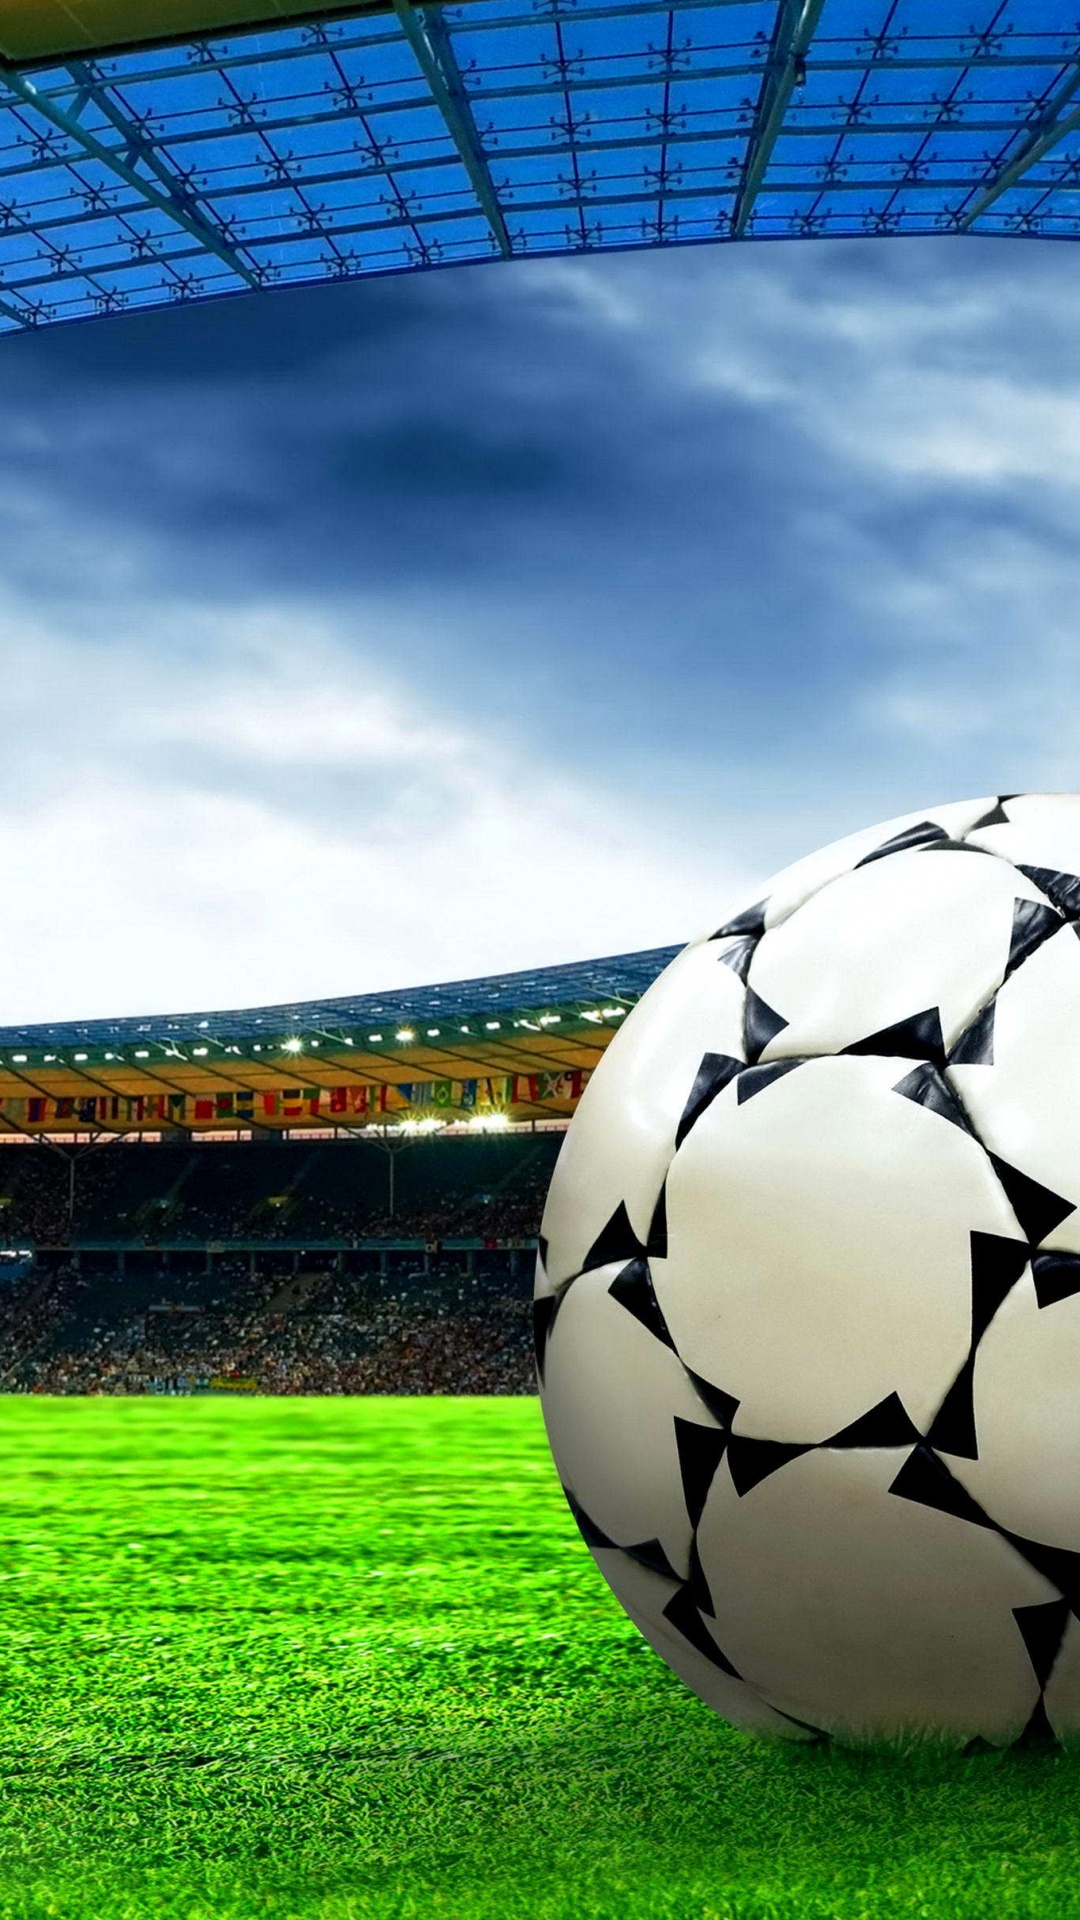 Fußball Auf Der Grünen Wiese Unter Weißen Wolken Tagsüber. Wallpaper in 1080x1920 Resolution